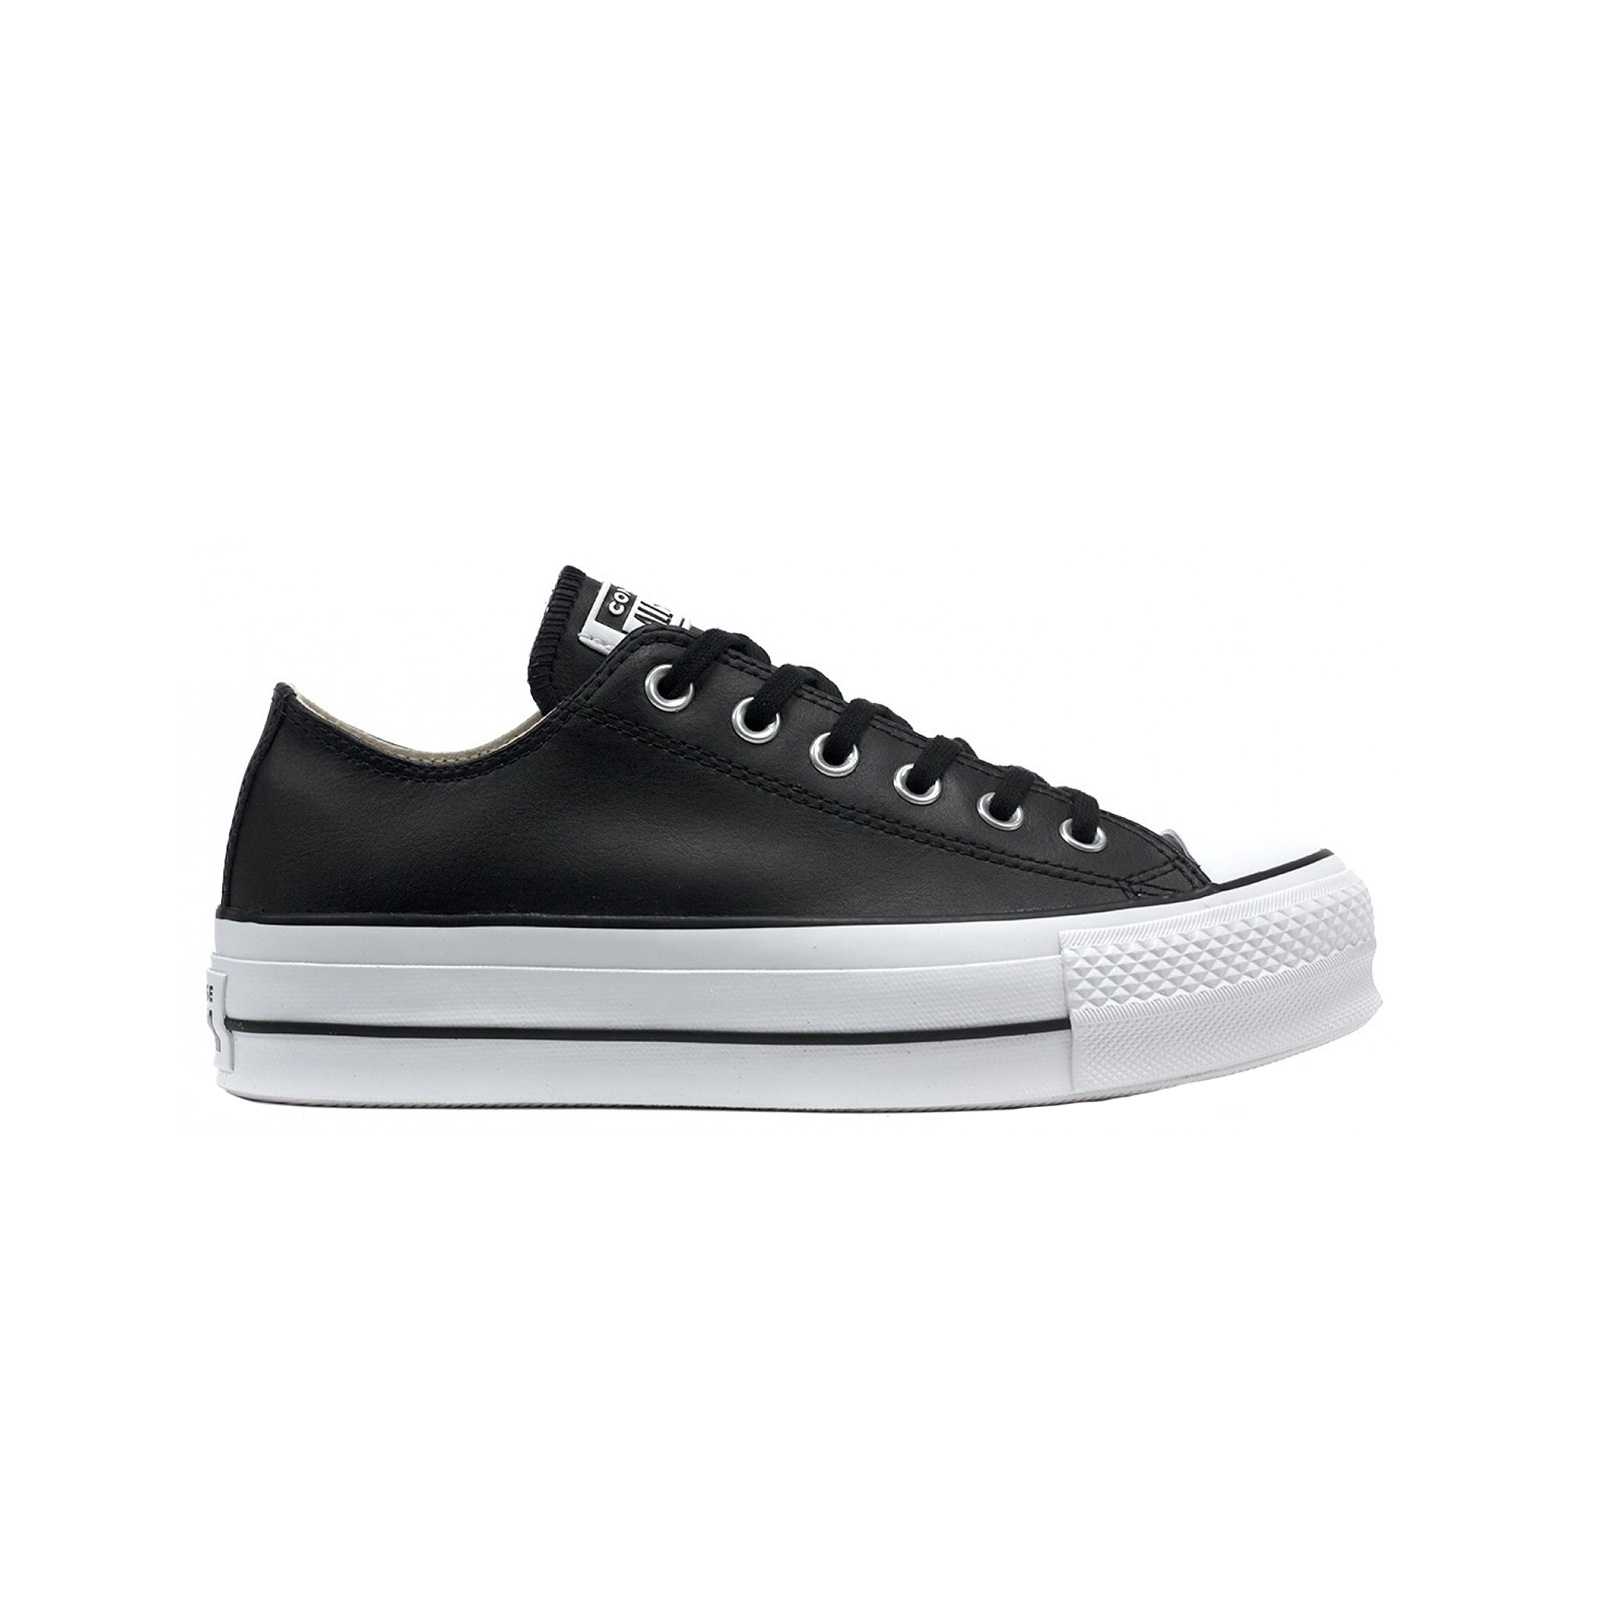 Γυναικεία > Παπούτσια > Sneaker > Παπούτσι Low Cut Converse - CHUCK TAYLOR ALL STAR LIFT CLEAN - 001-BLACK/BLACK/WHITE